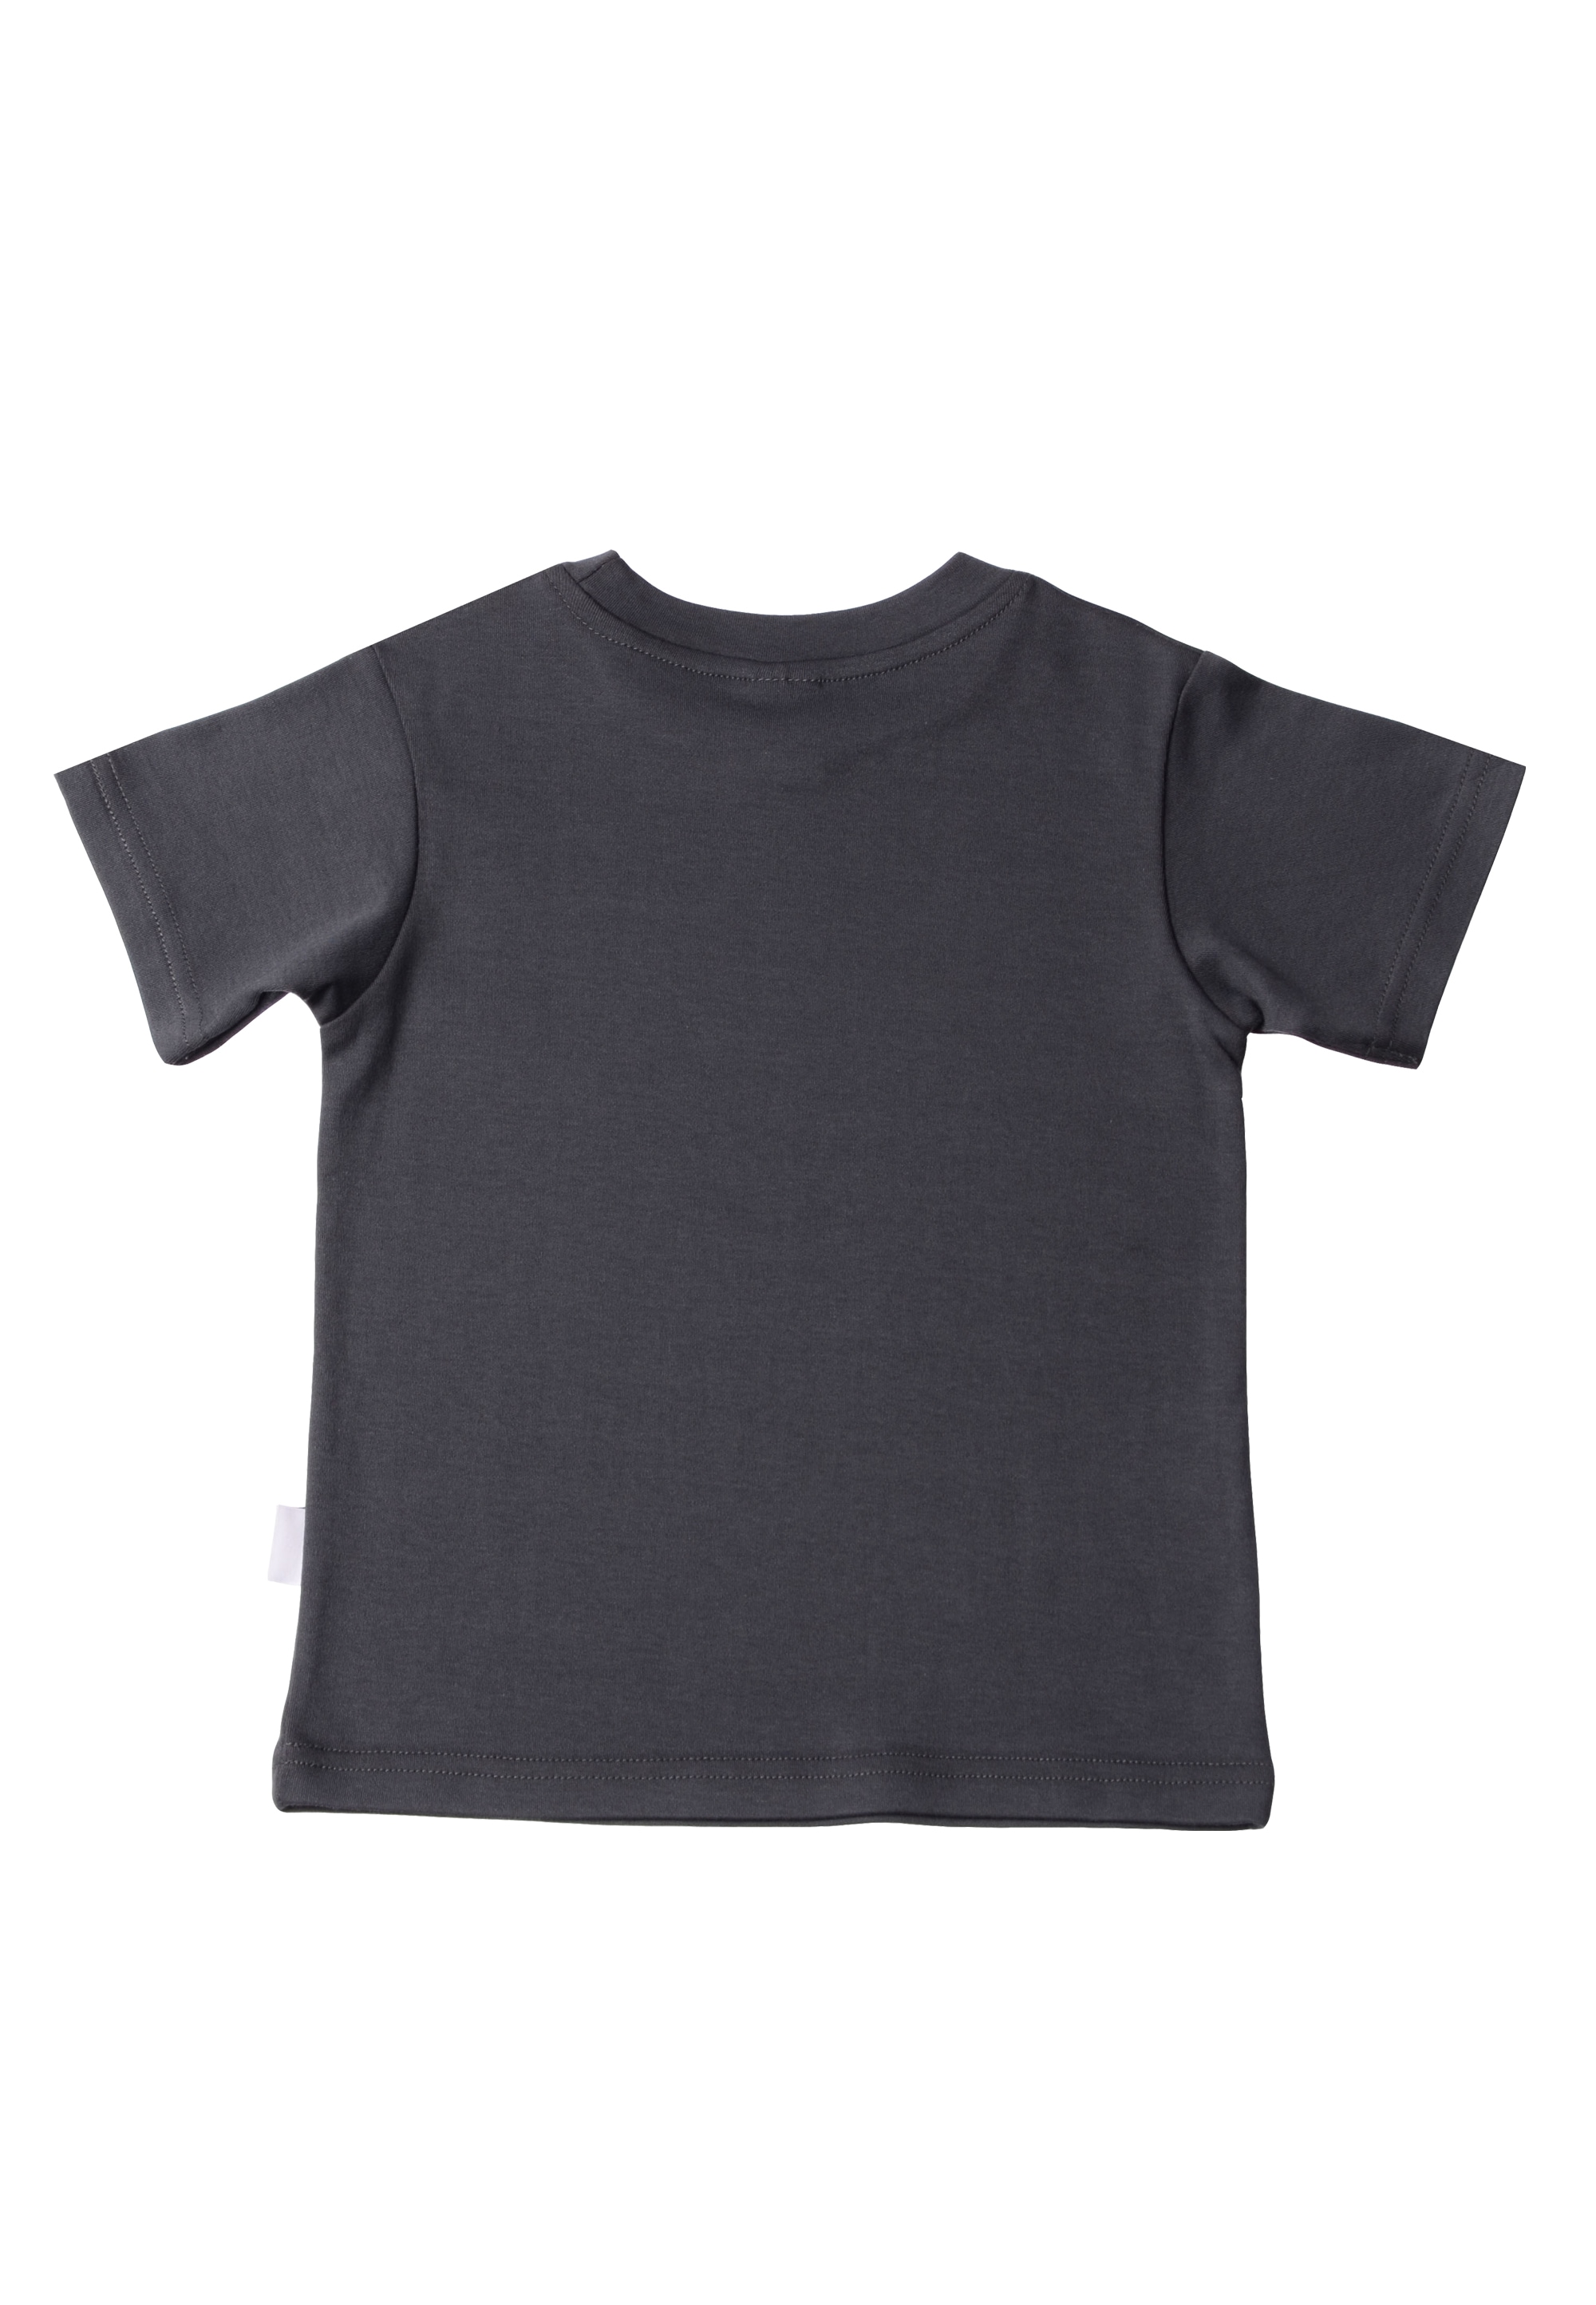 Liliput T-Shirt »Roar«, aus hochwertiger Bio-Baumwolle